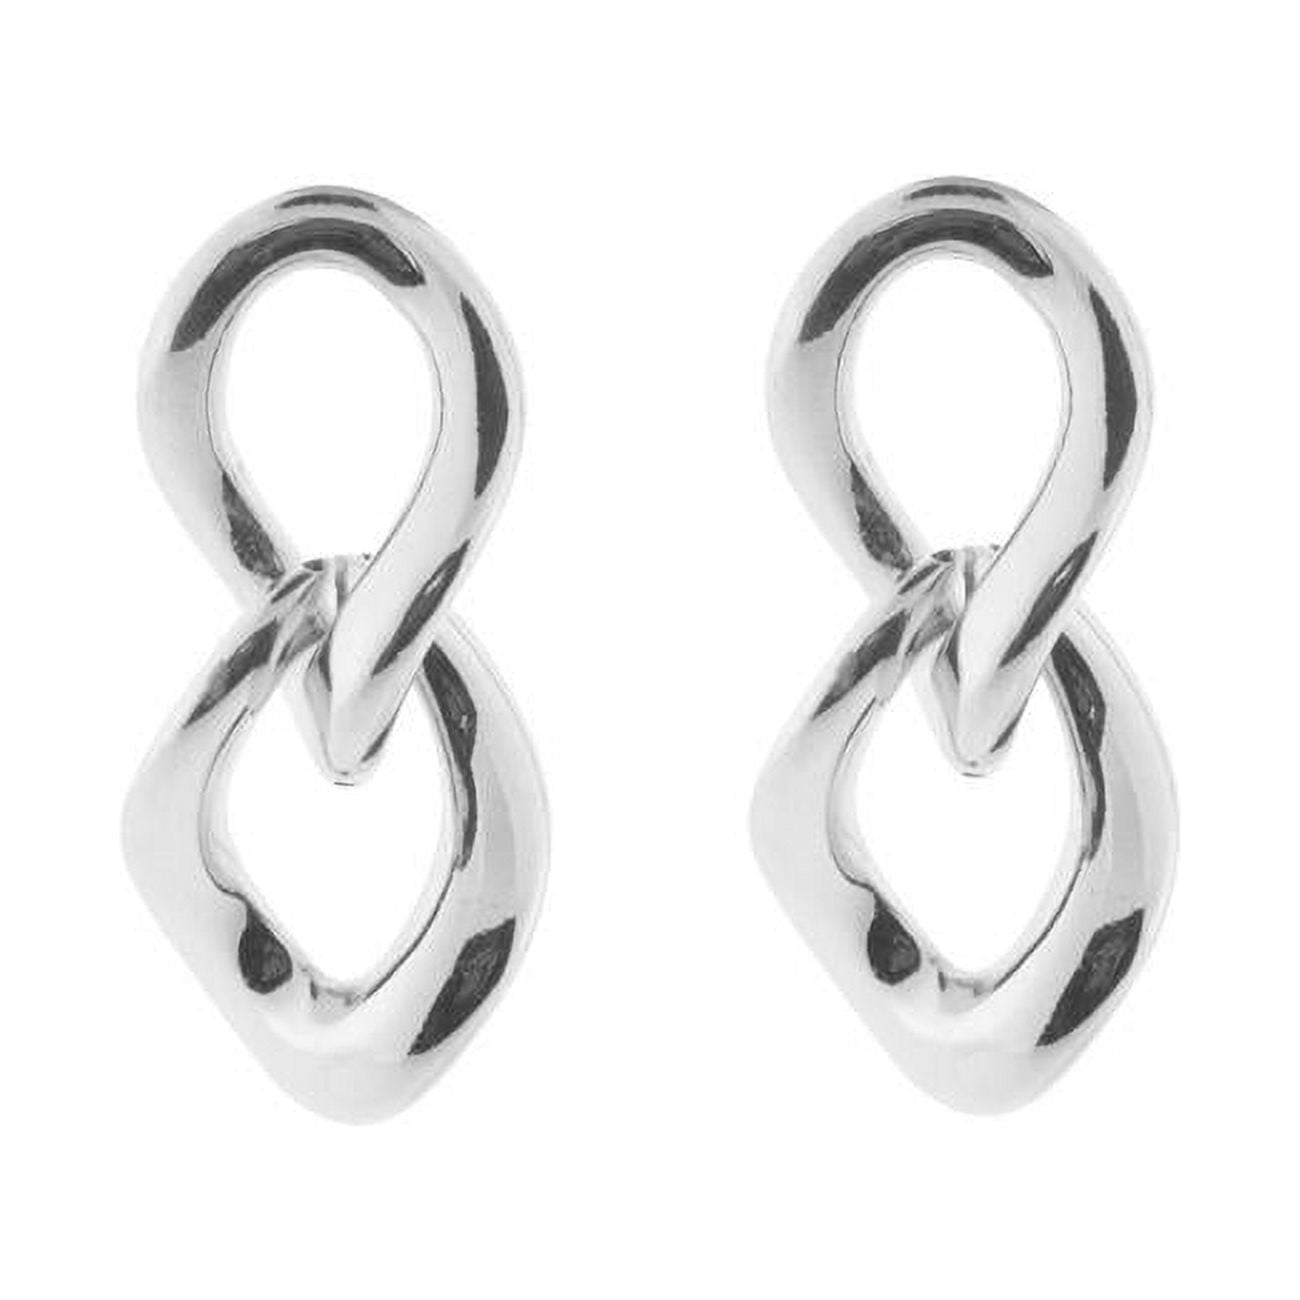 435152s Electroformed Polished Silver Italian Links Earrings For Women